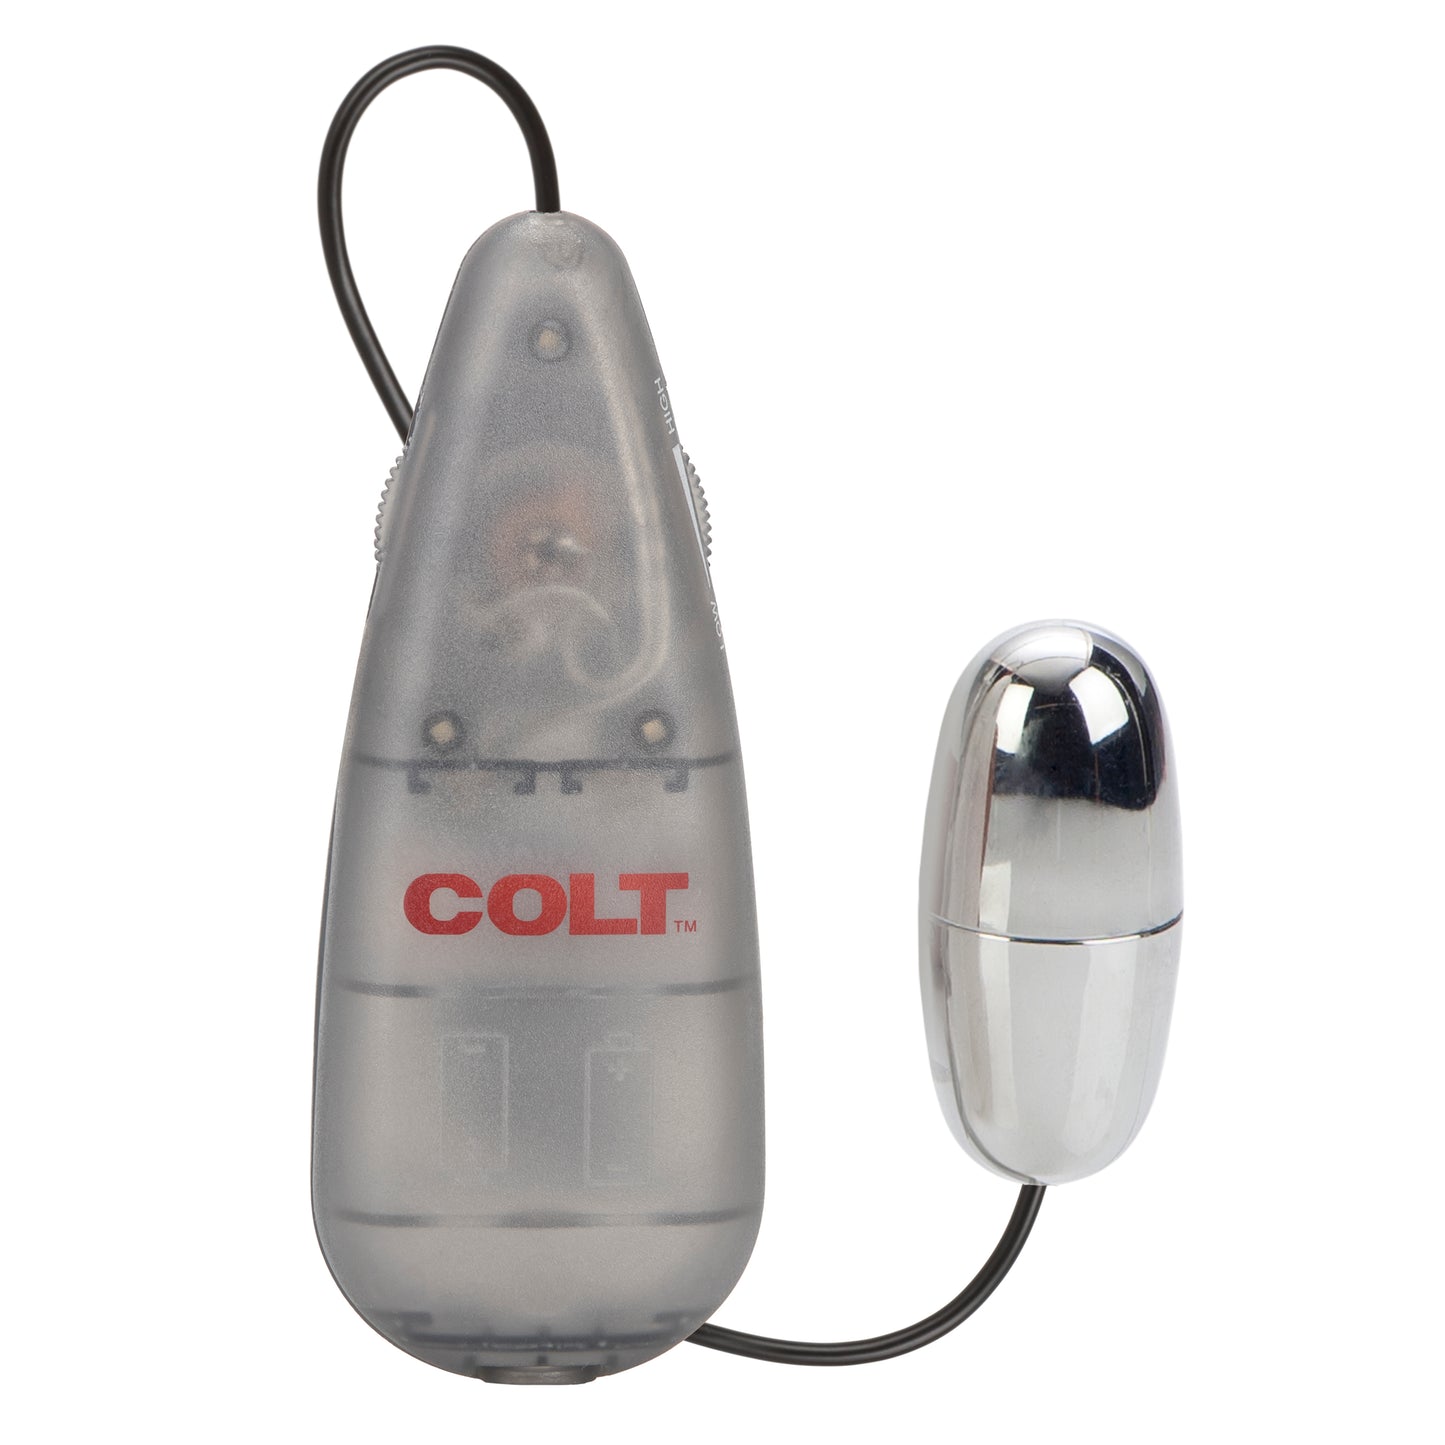 COLT® Power Bullet - Bullet